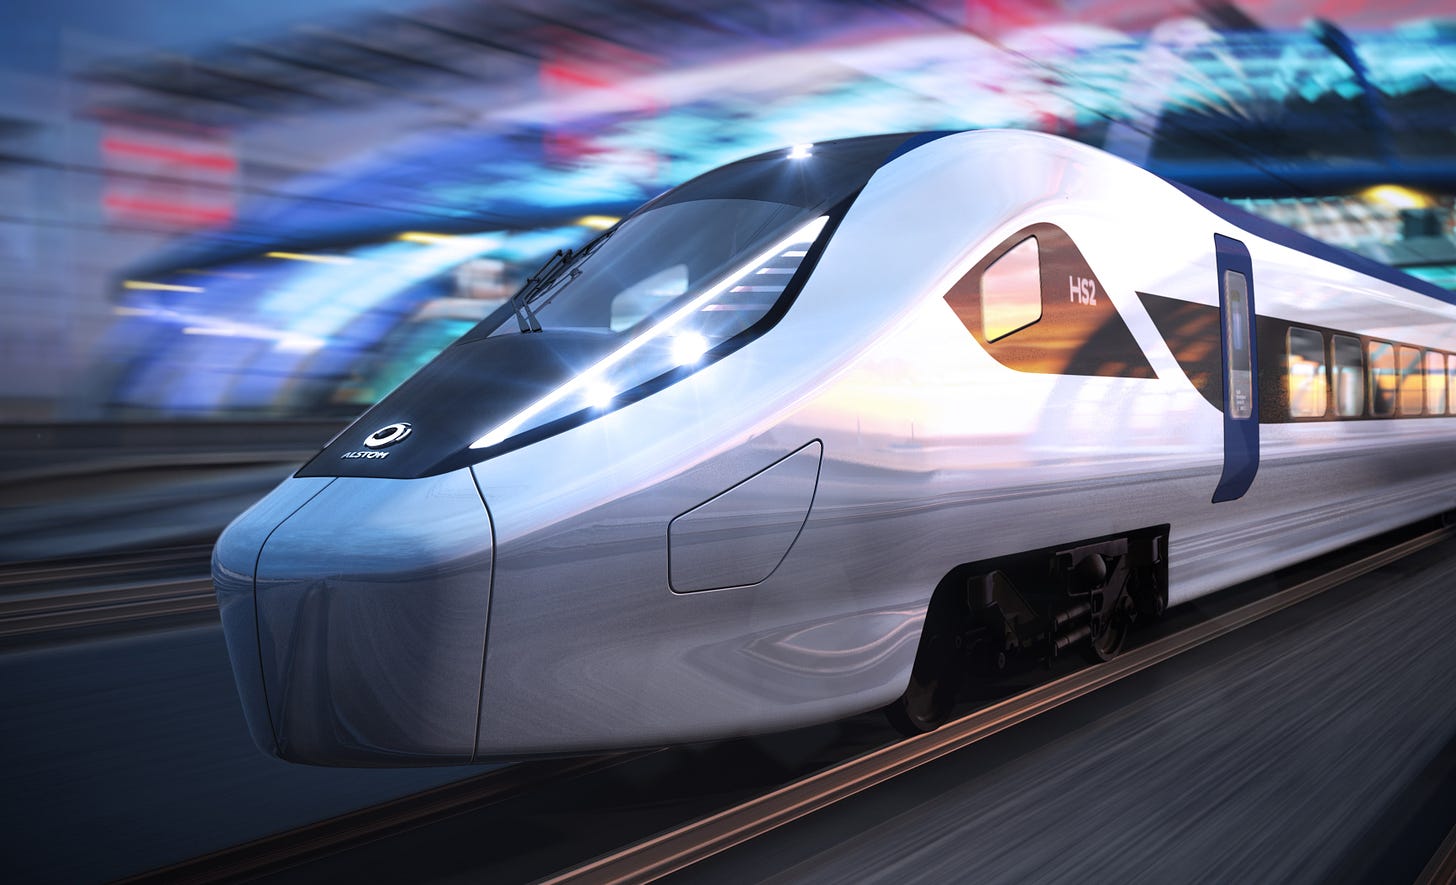 Alstom unveils proposed HS2 train design | Alstom